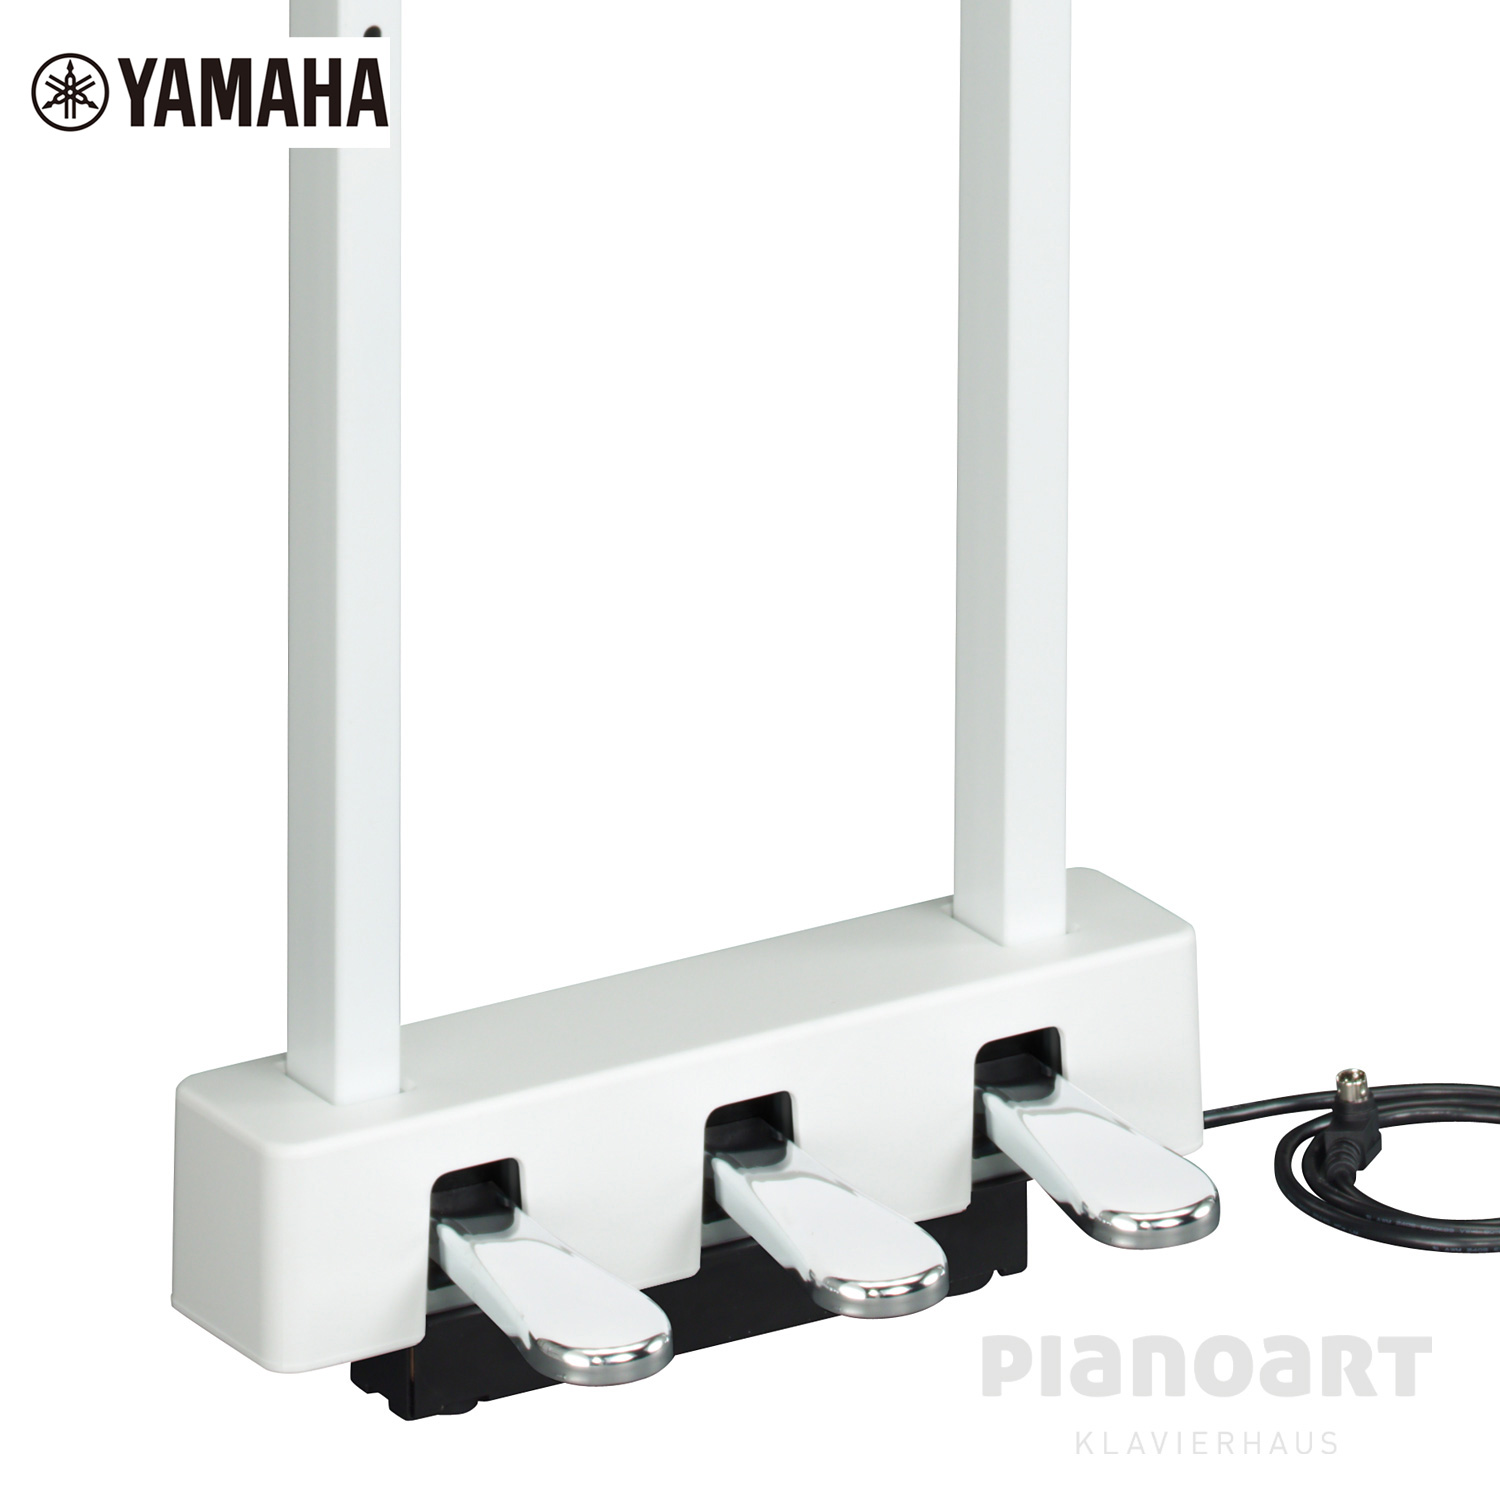 Yamaha LP-1 Dreier Pedaleinheit in Weiß